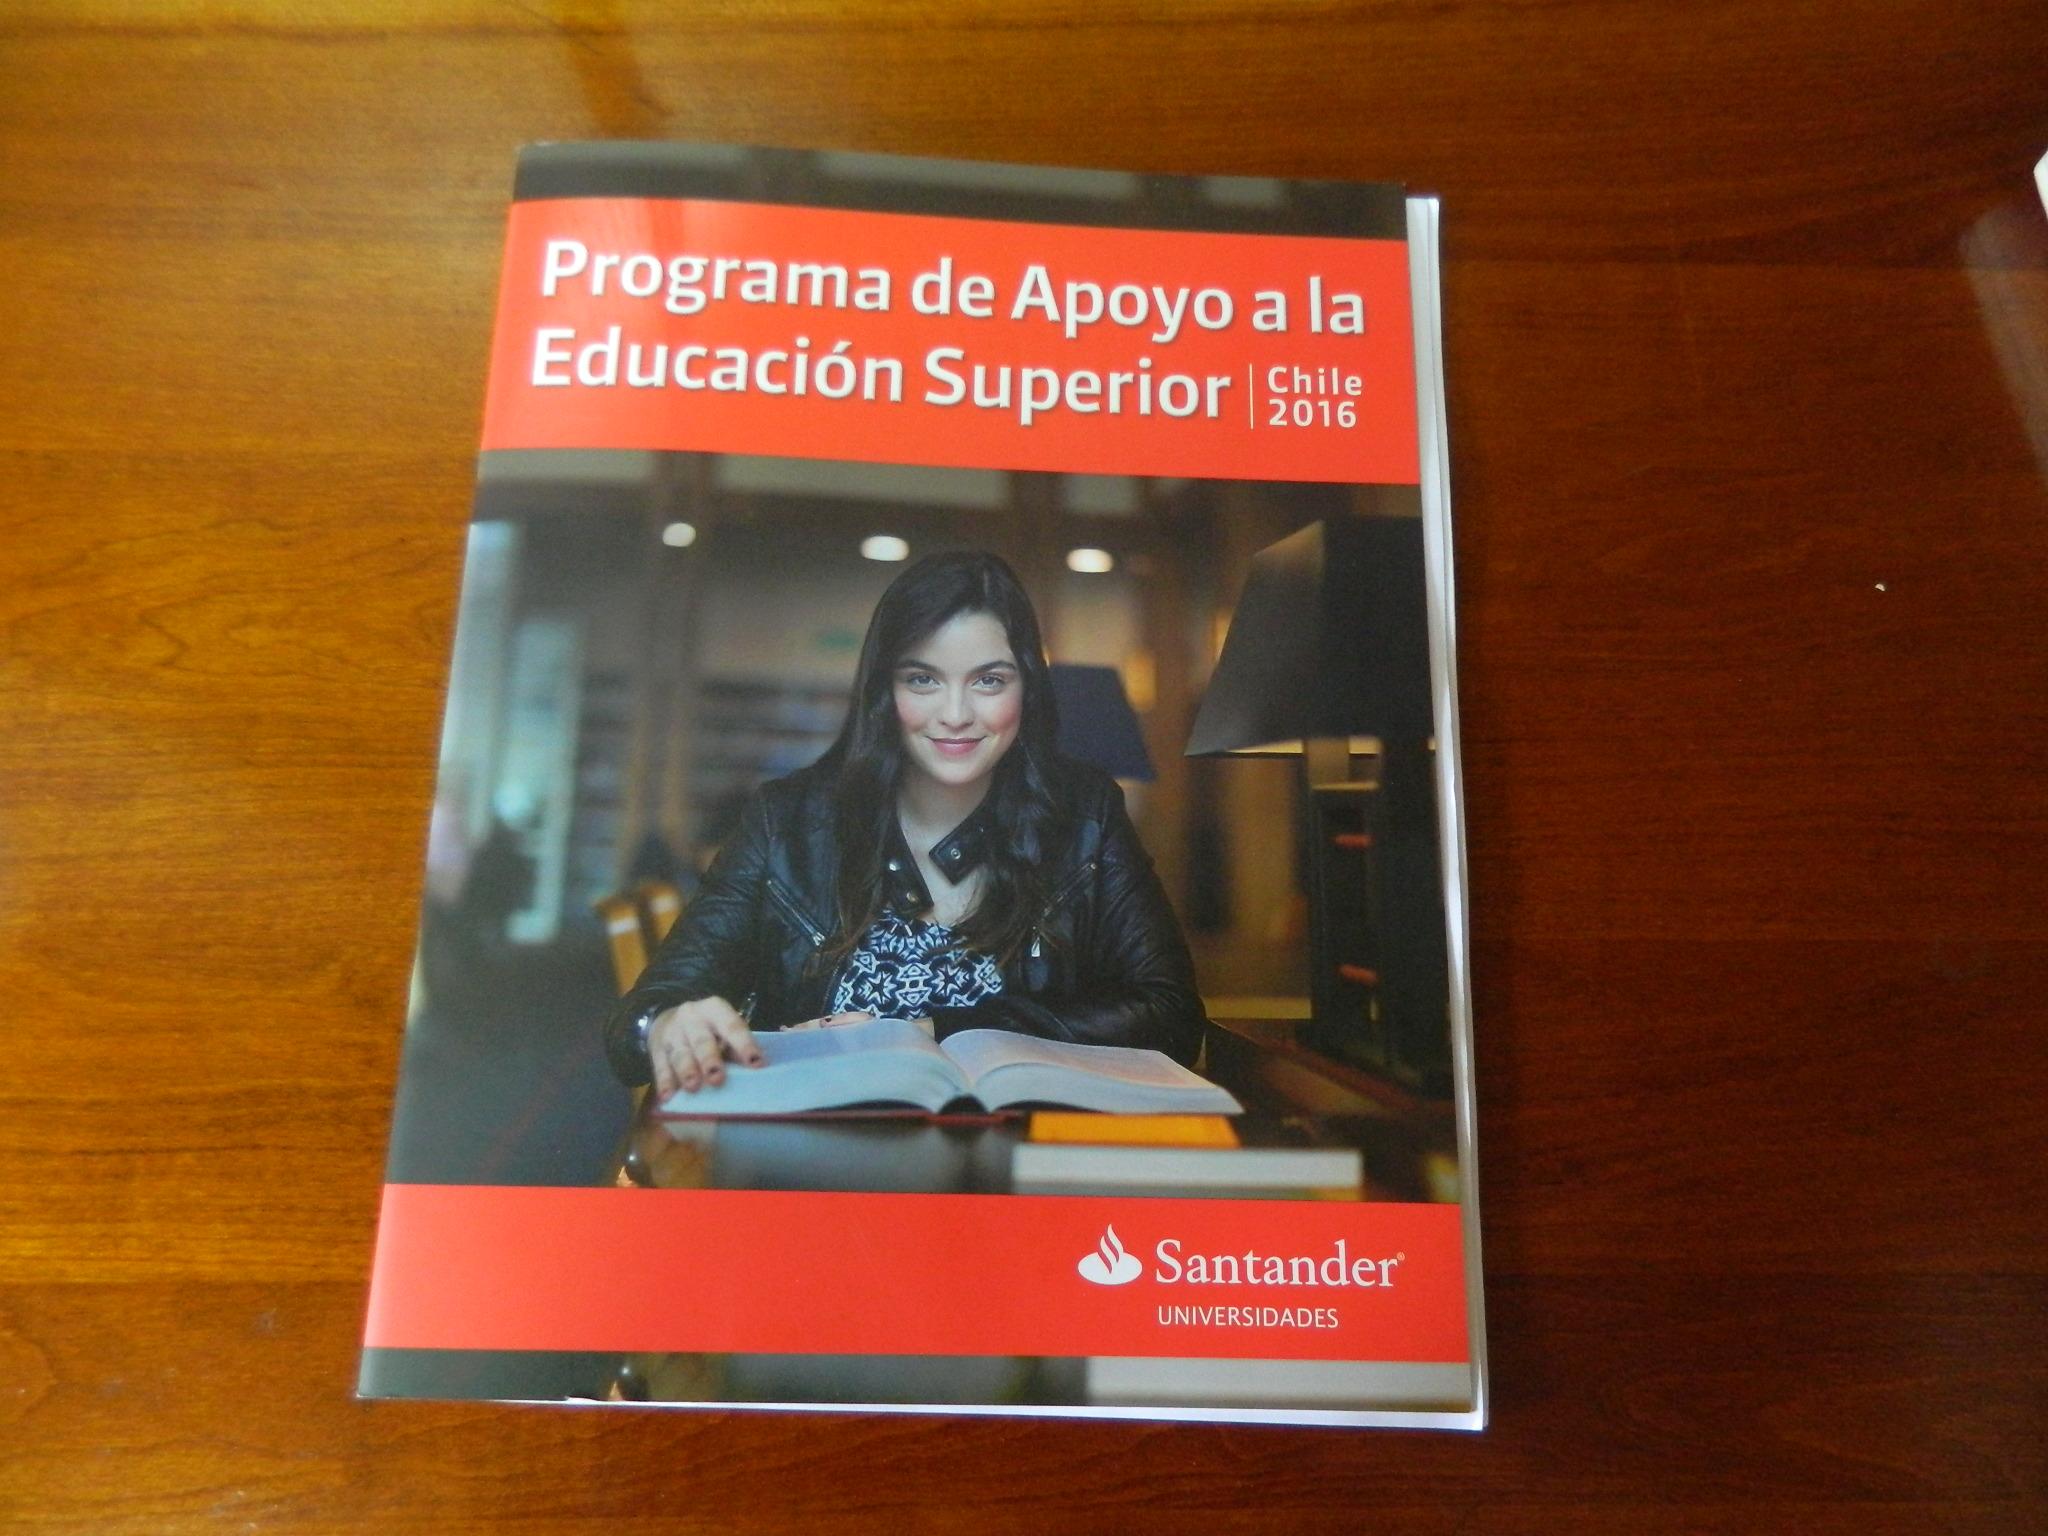 La Beca Iberoamérica Santander es producto de un convenio de Colaboración entre Campus Sur de la Universidad de Chile y el Banco Santander el año 2013.